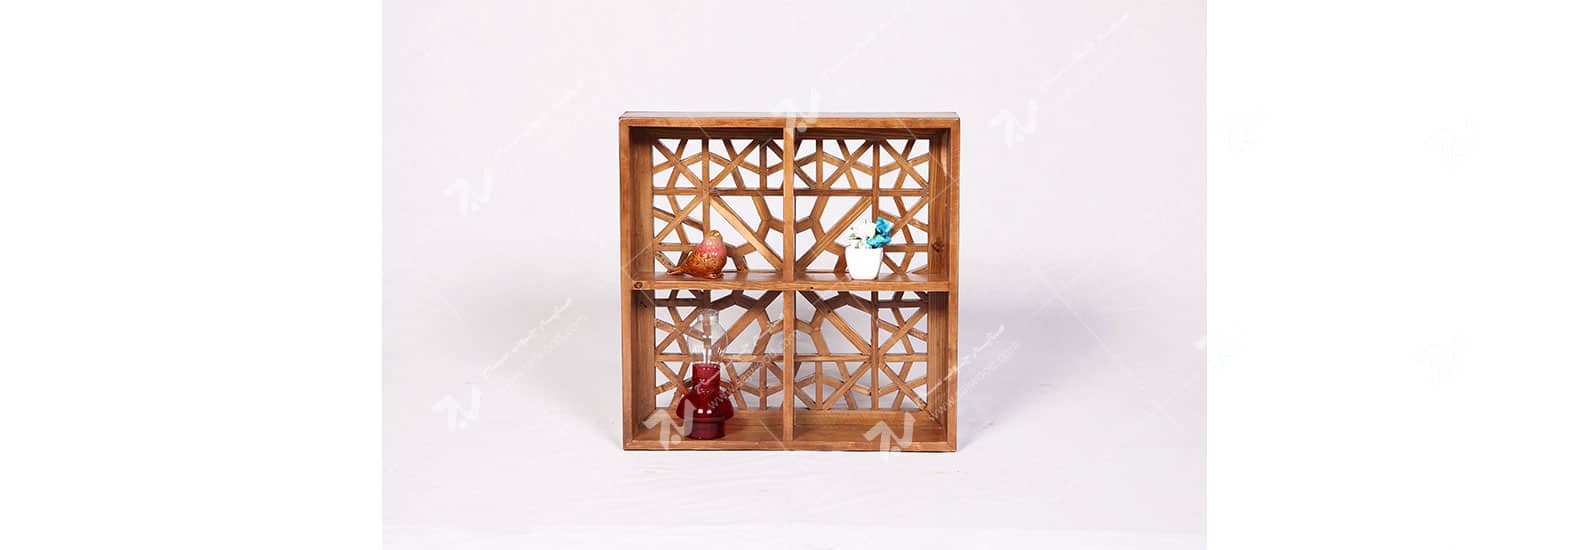 دکوری (شلف ، باکس دیواری ) چوبی سنتی مشبک گره چینی - آذین کد ۶۰۵